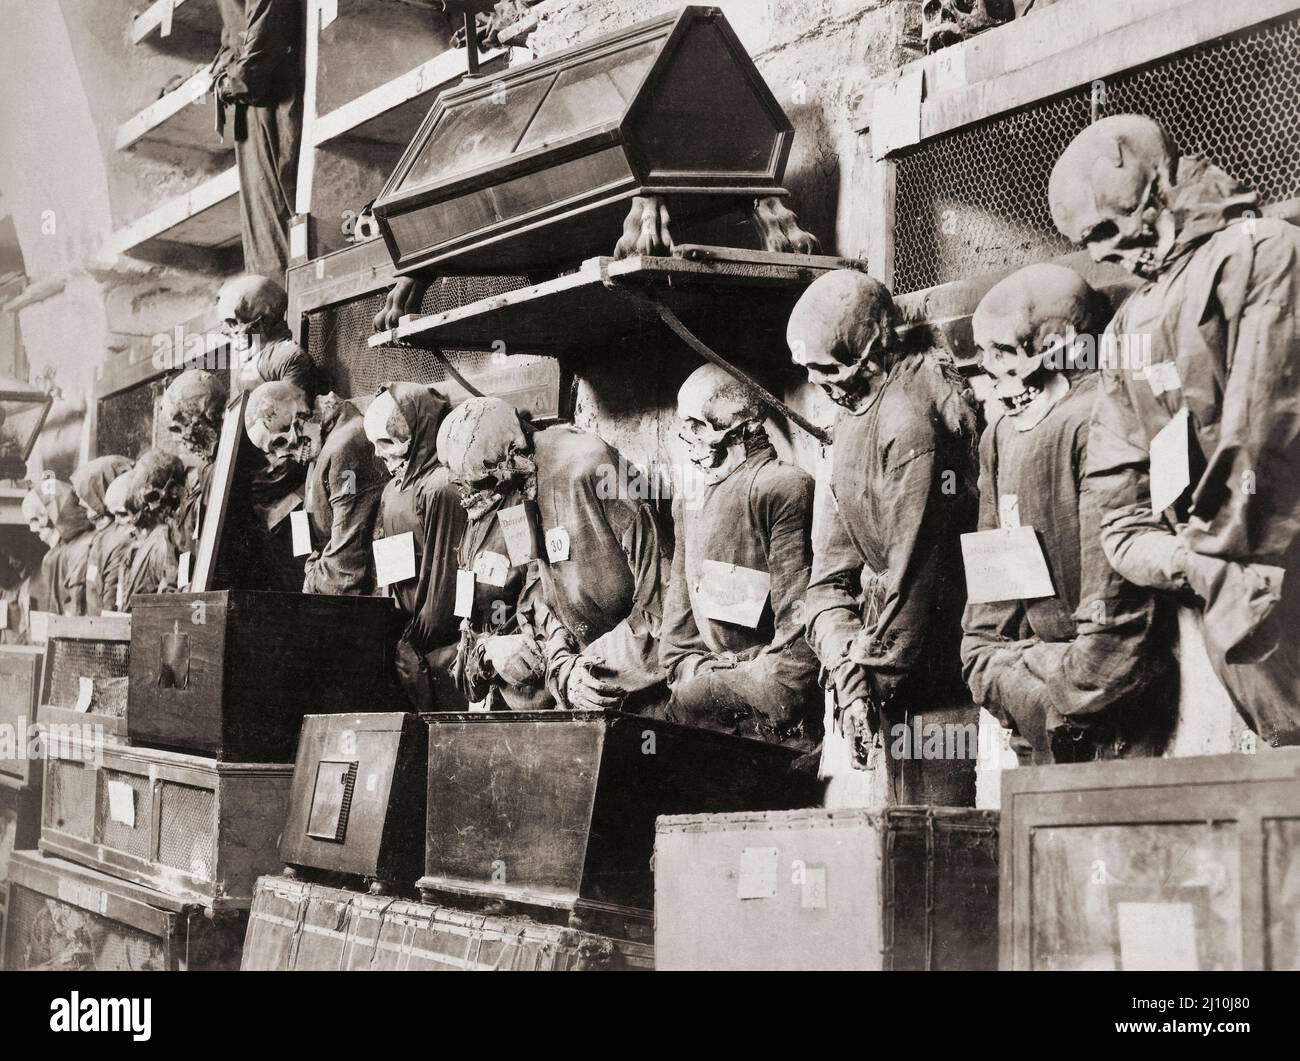 Corps momifiés de moines décédés dans les catacombes de Capuchin de Palerme, Sicile, Italie. Après un travail du photographe italien Giuseppe incorpora vers 1895. Banque D'Images